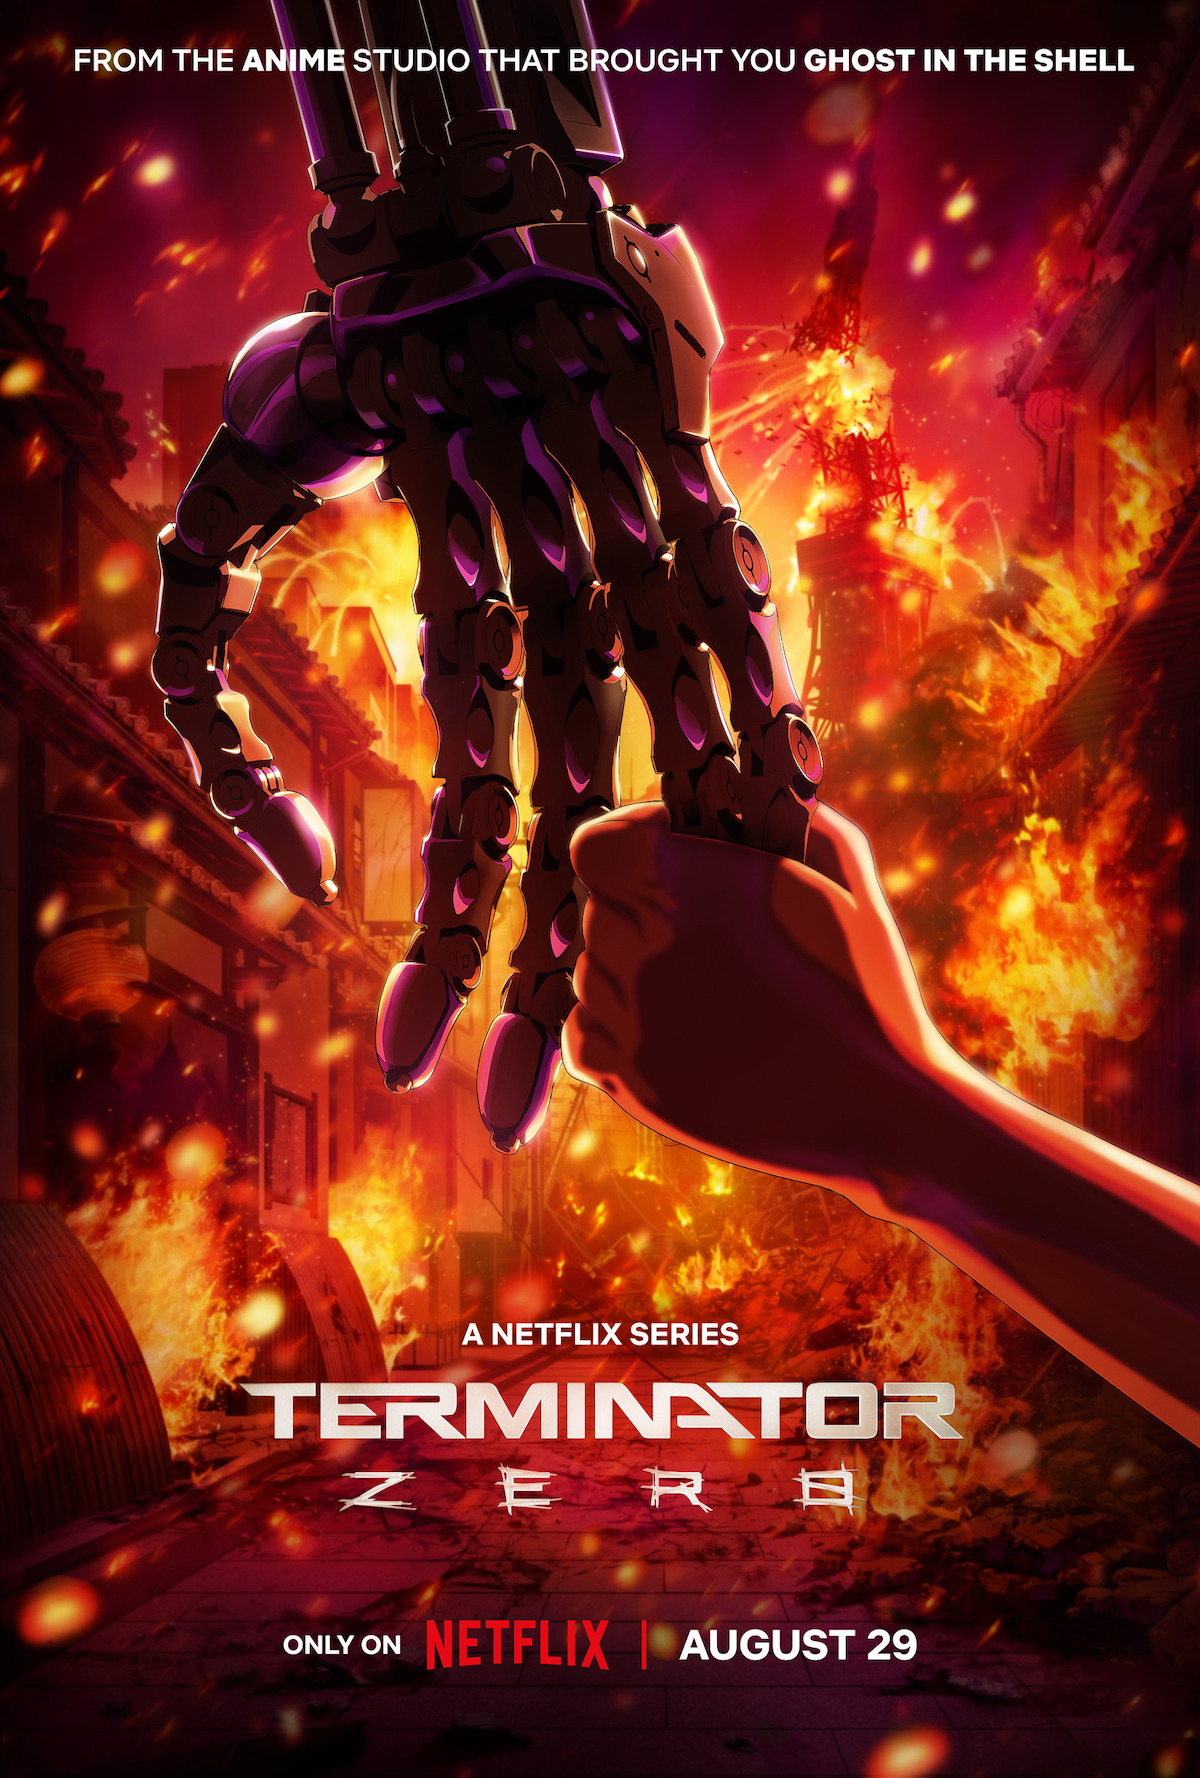 ‘Terminator Zero’ Teaser Key Art.